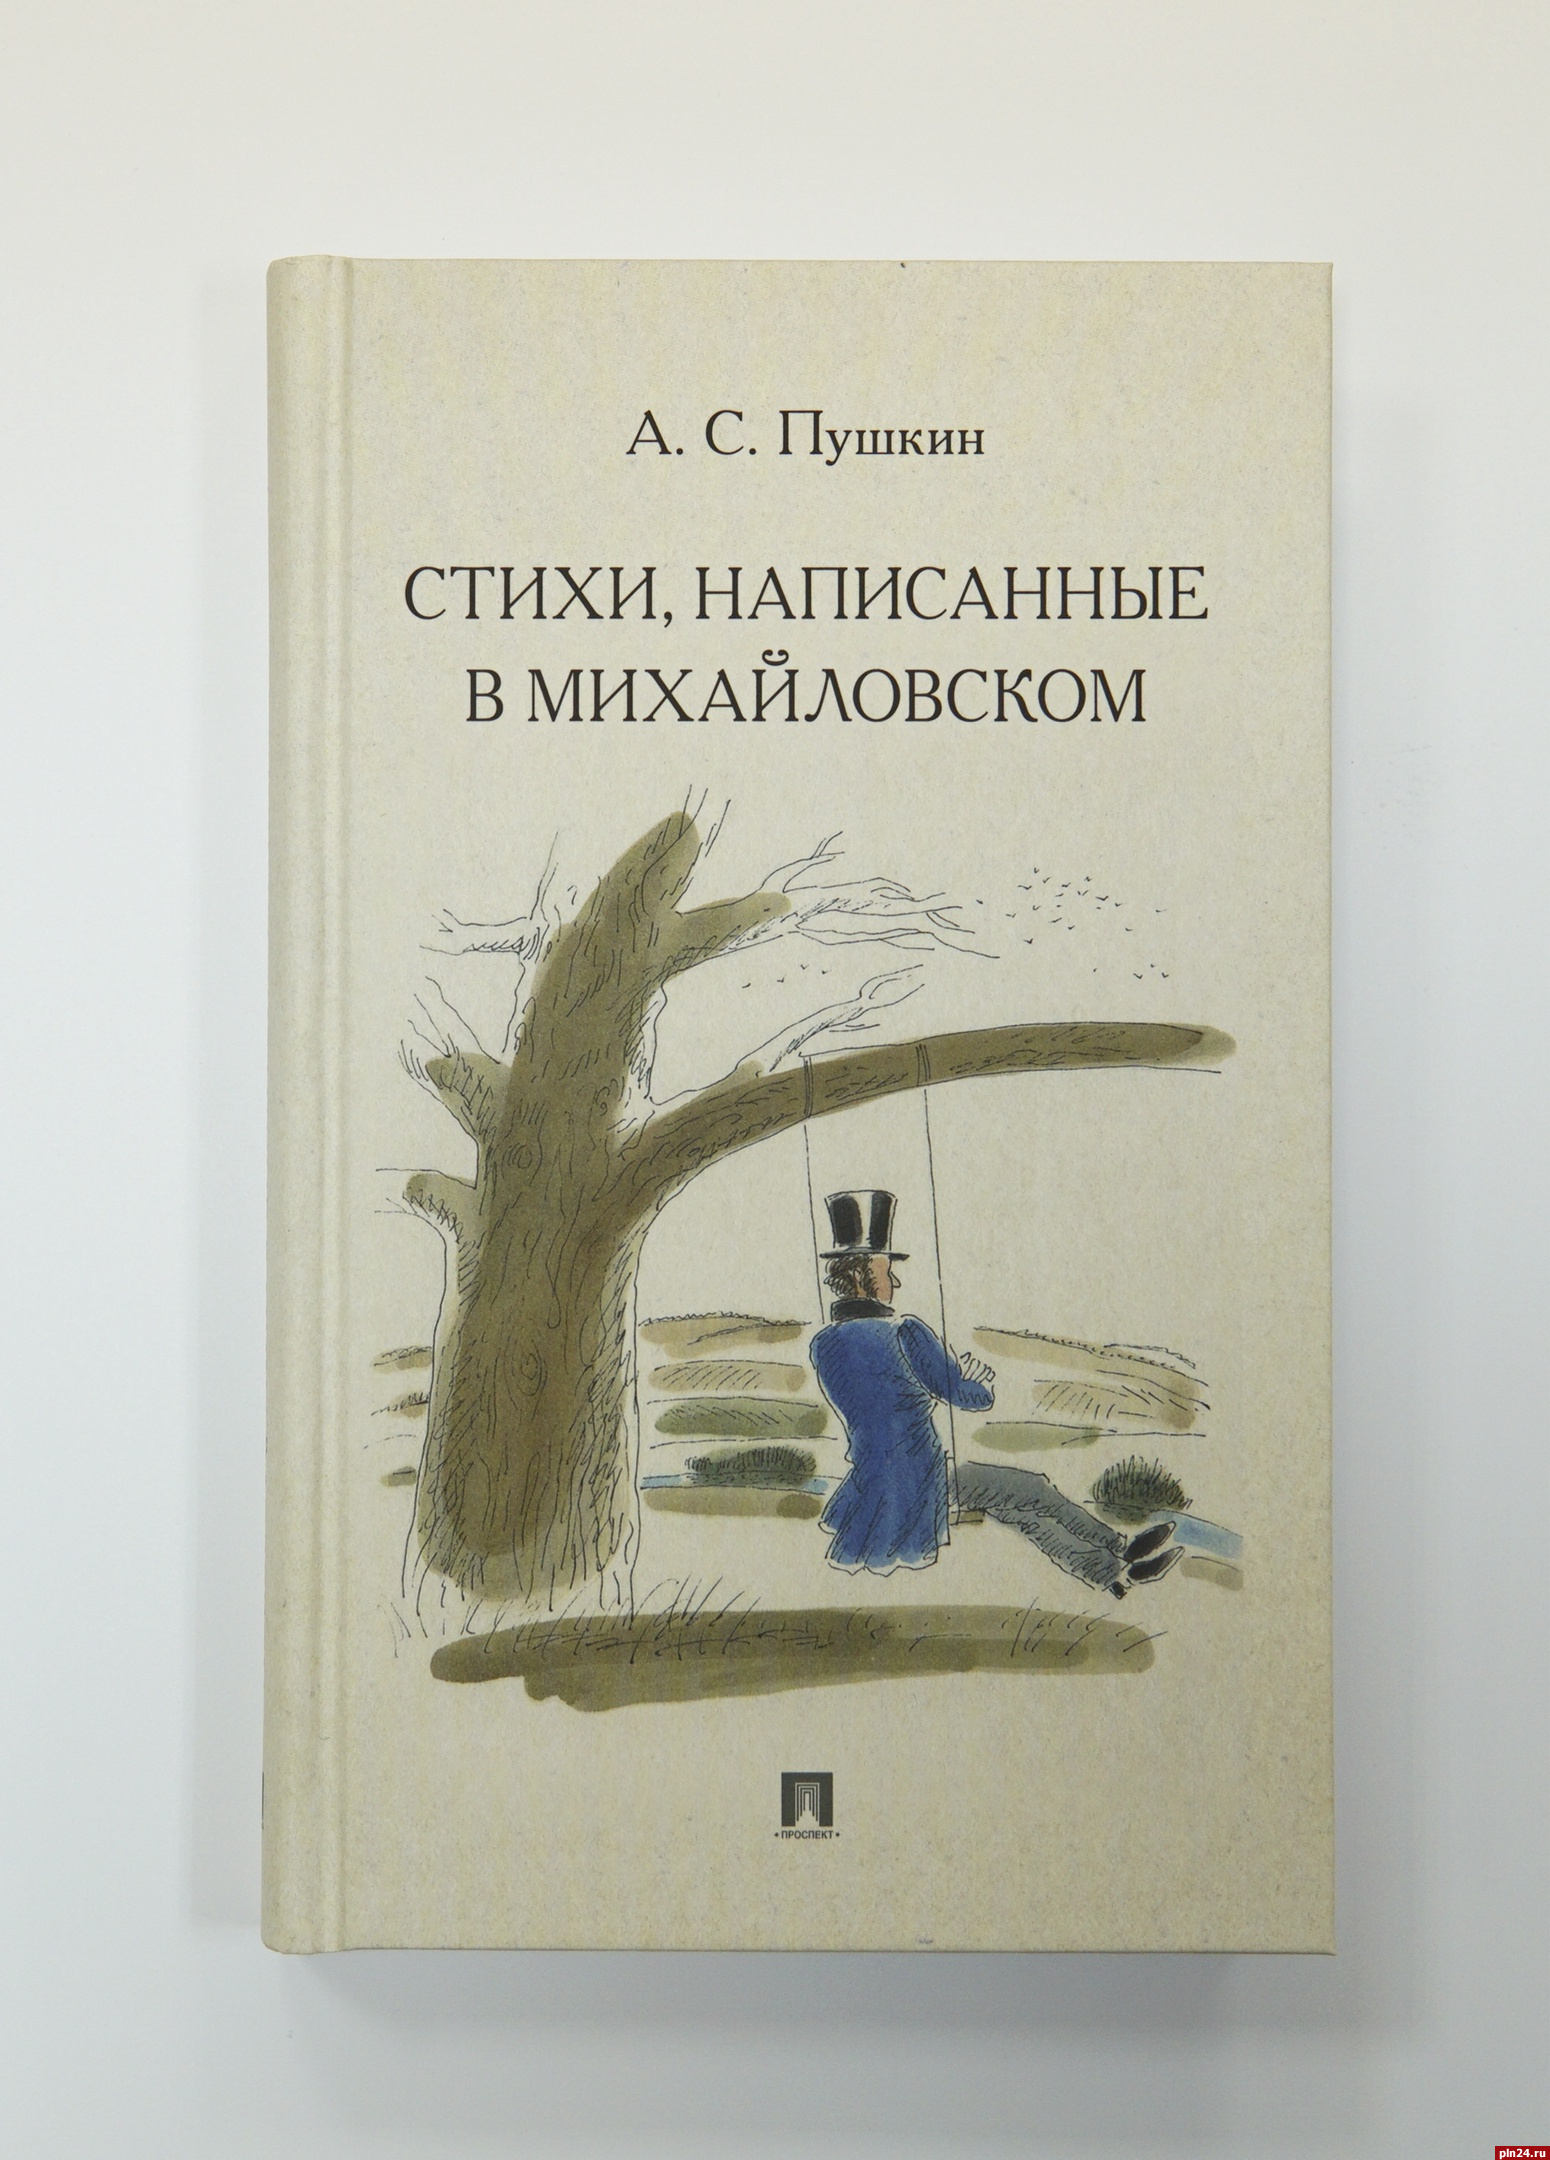 Вышли в свет пушкинские «Стихи, написанные в Михайловском» с иллюстрациями Шаймарданова